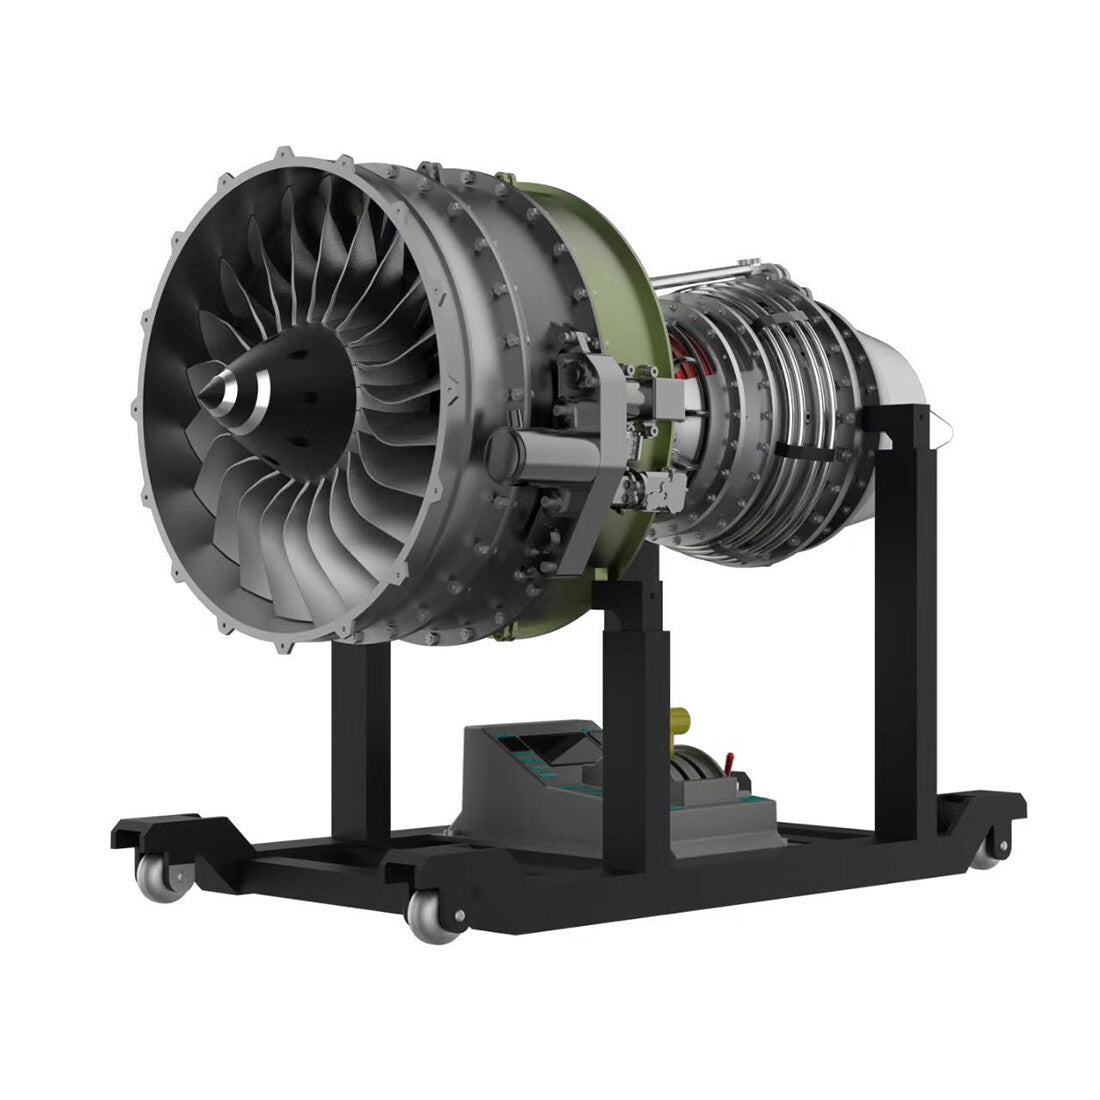 Kit de Modelo de Motor Turbofán de Doble Eje TECHING: Construye tu Propio Motor Turbofán de Avión con más de 1000 Piezas.